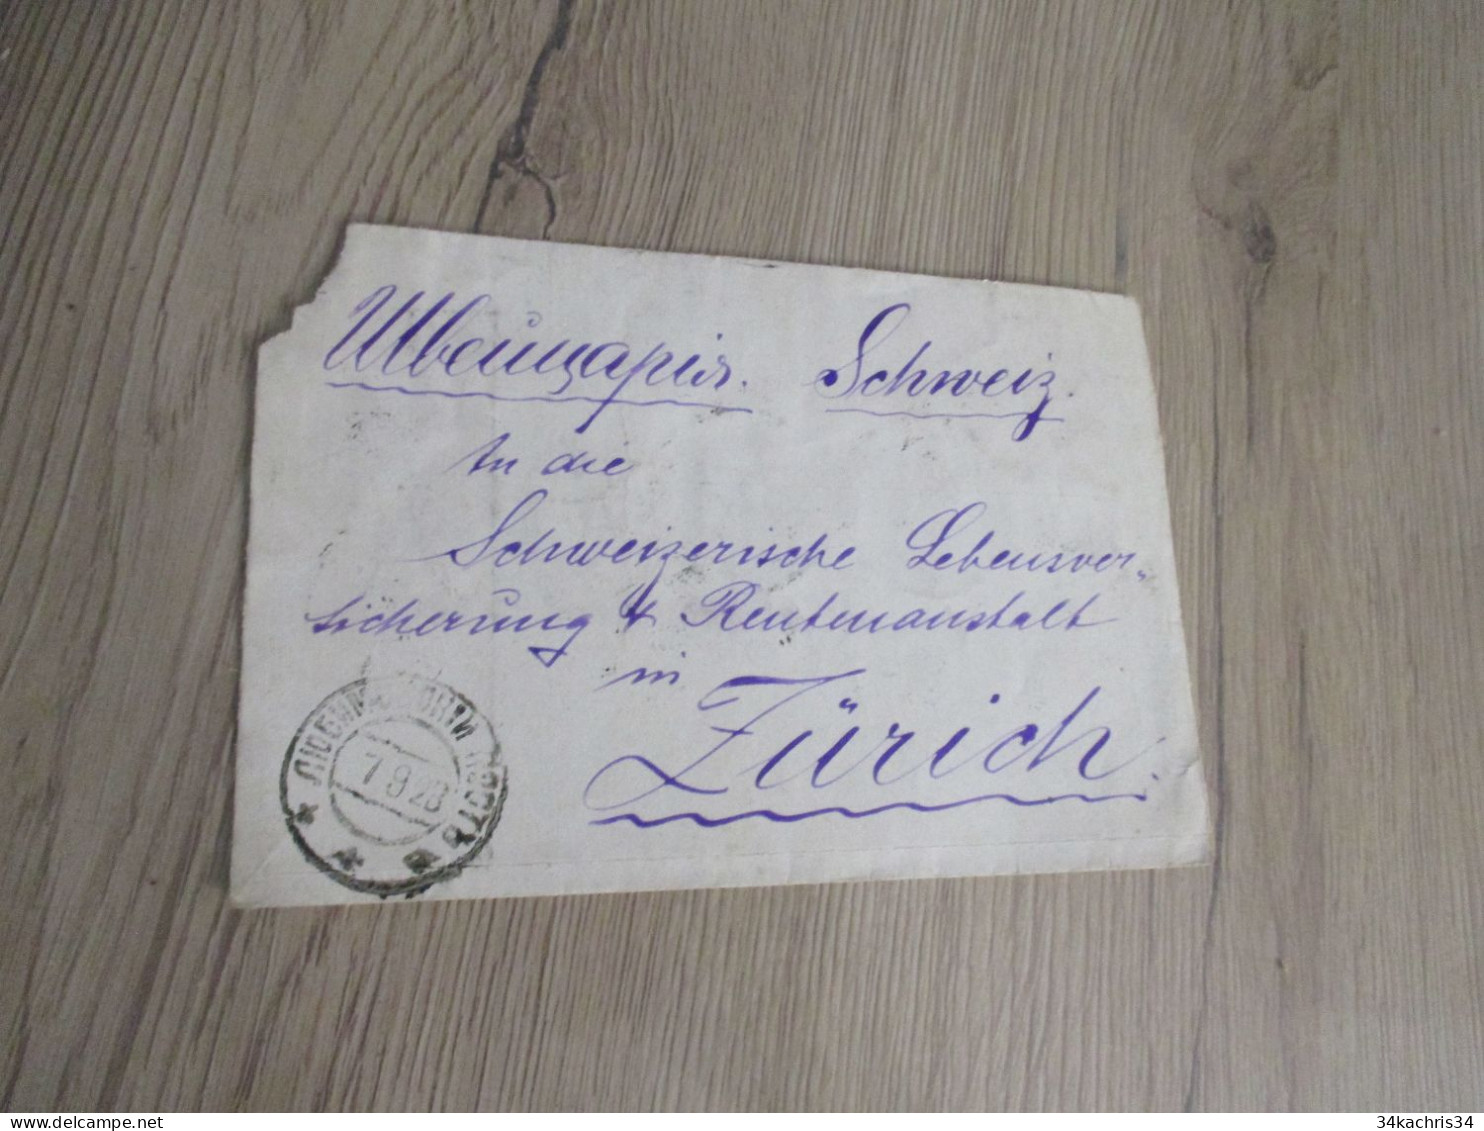 Lettre Russie Russia 9 Stamp Surchargés P100P P200P 1928 Pour Zurich - Storia Postale